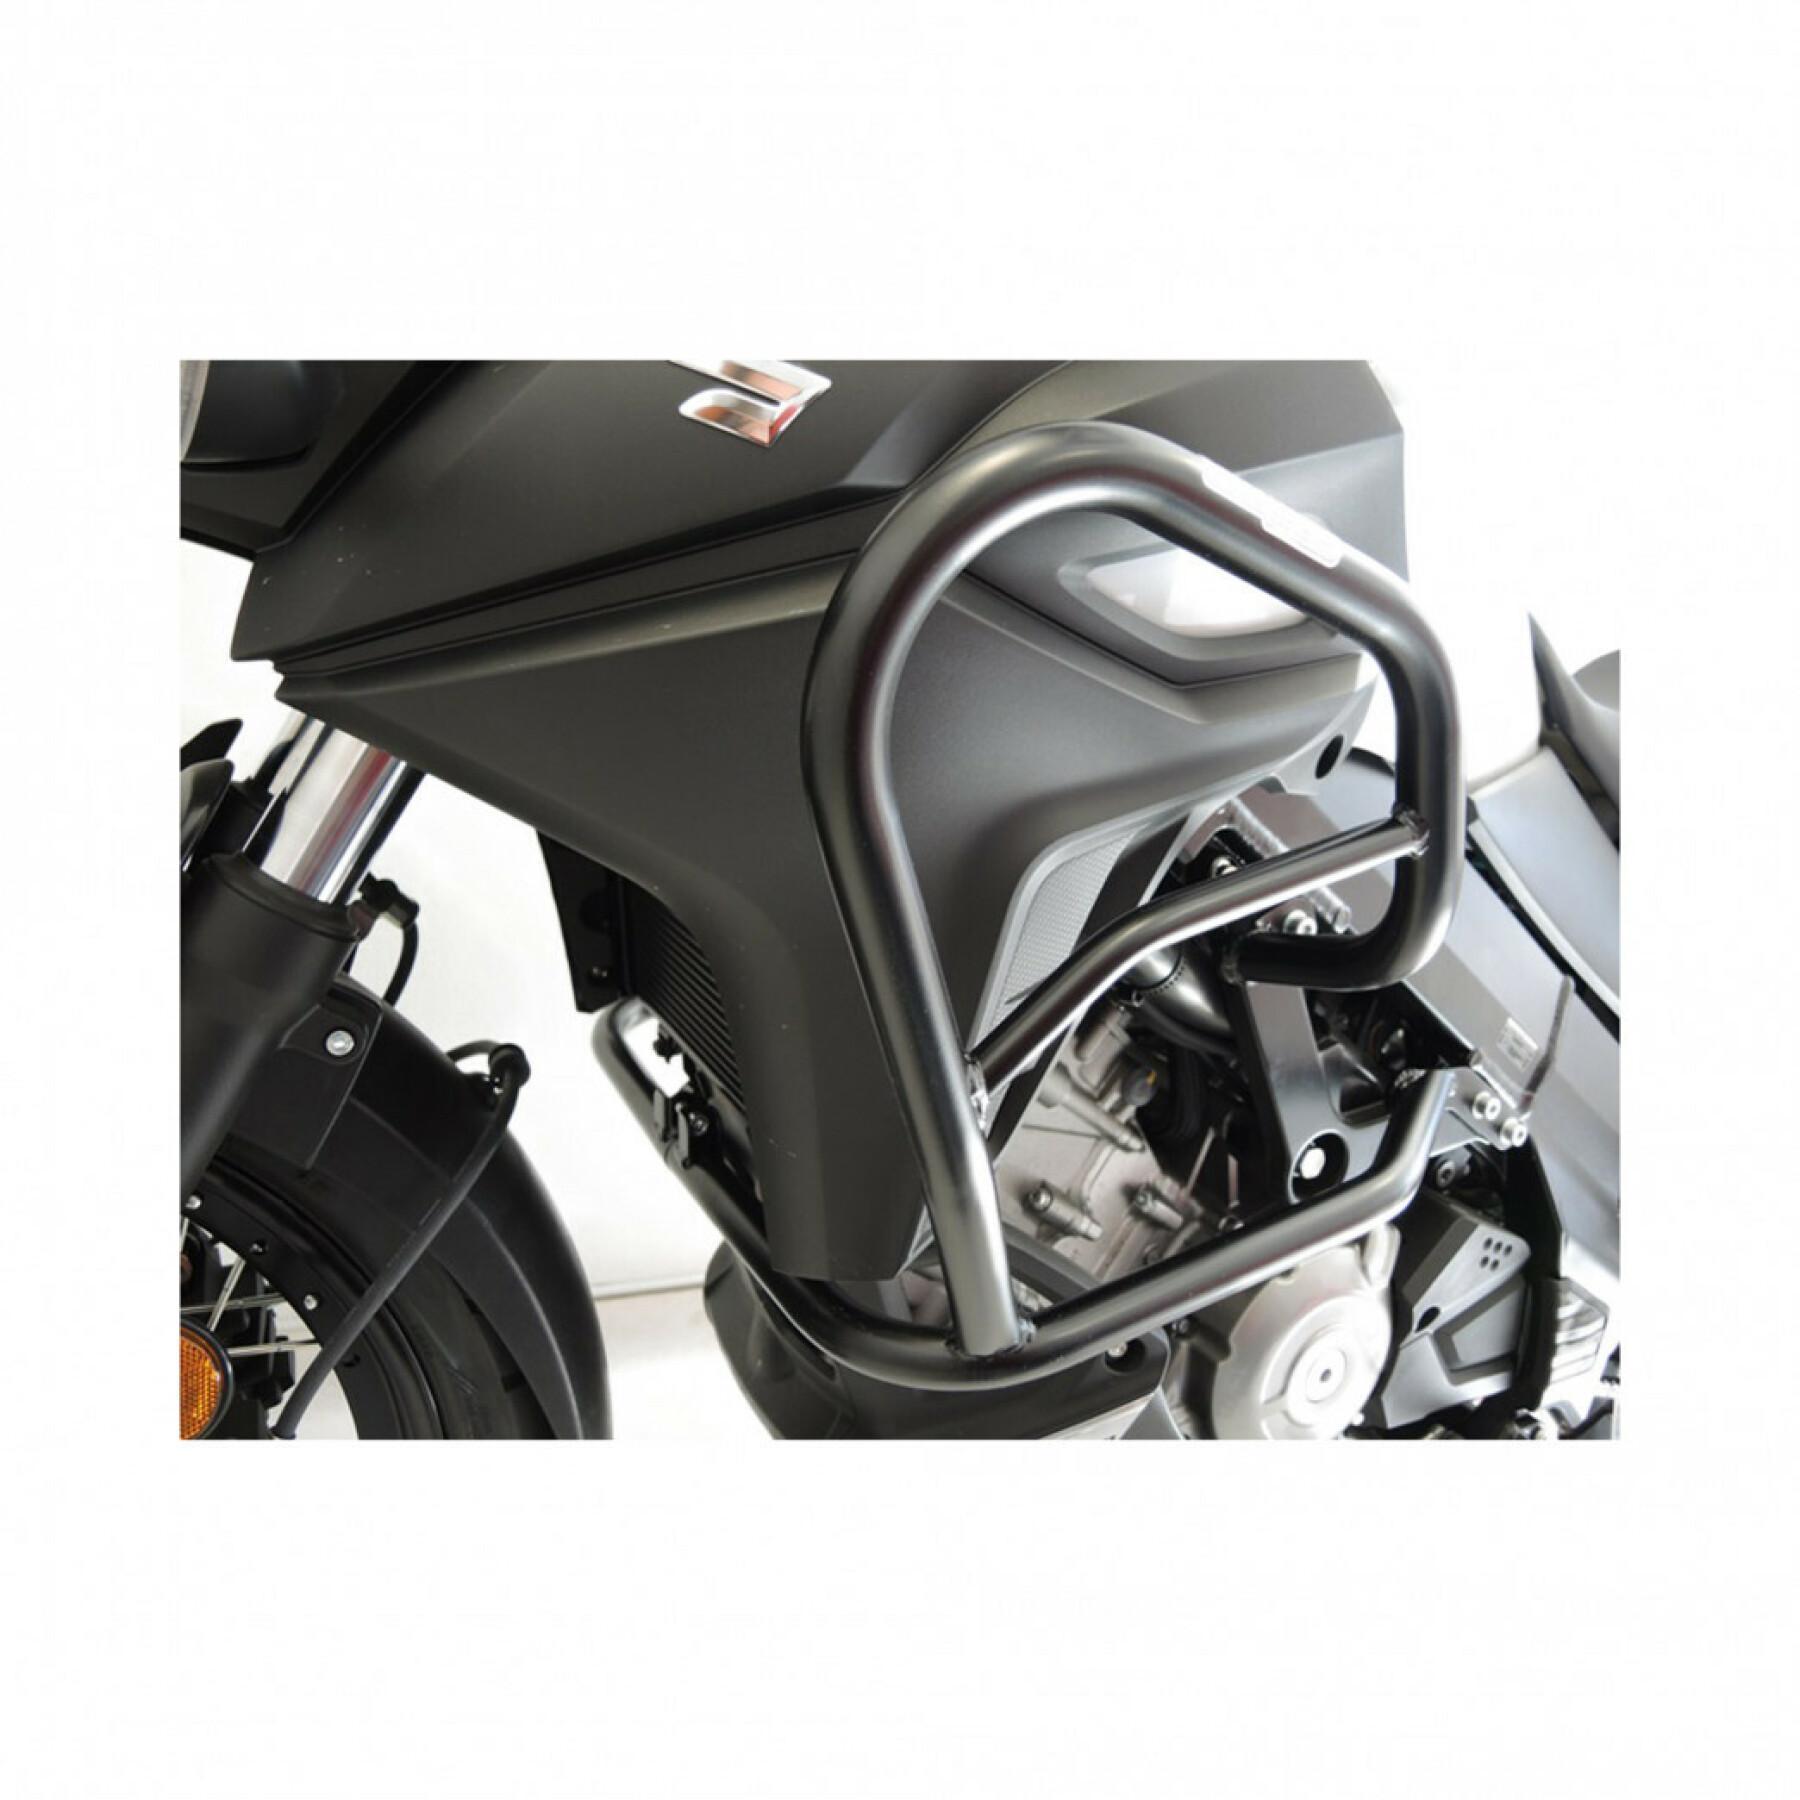 Carterbeschermer voor motorfietsen RD Moto Suzuki Dl650 V-Strom Xt '17-'19